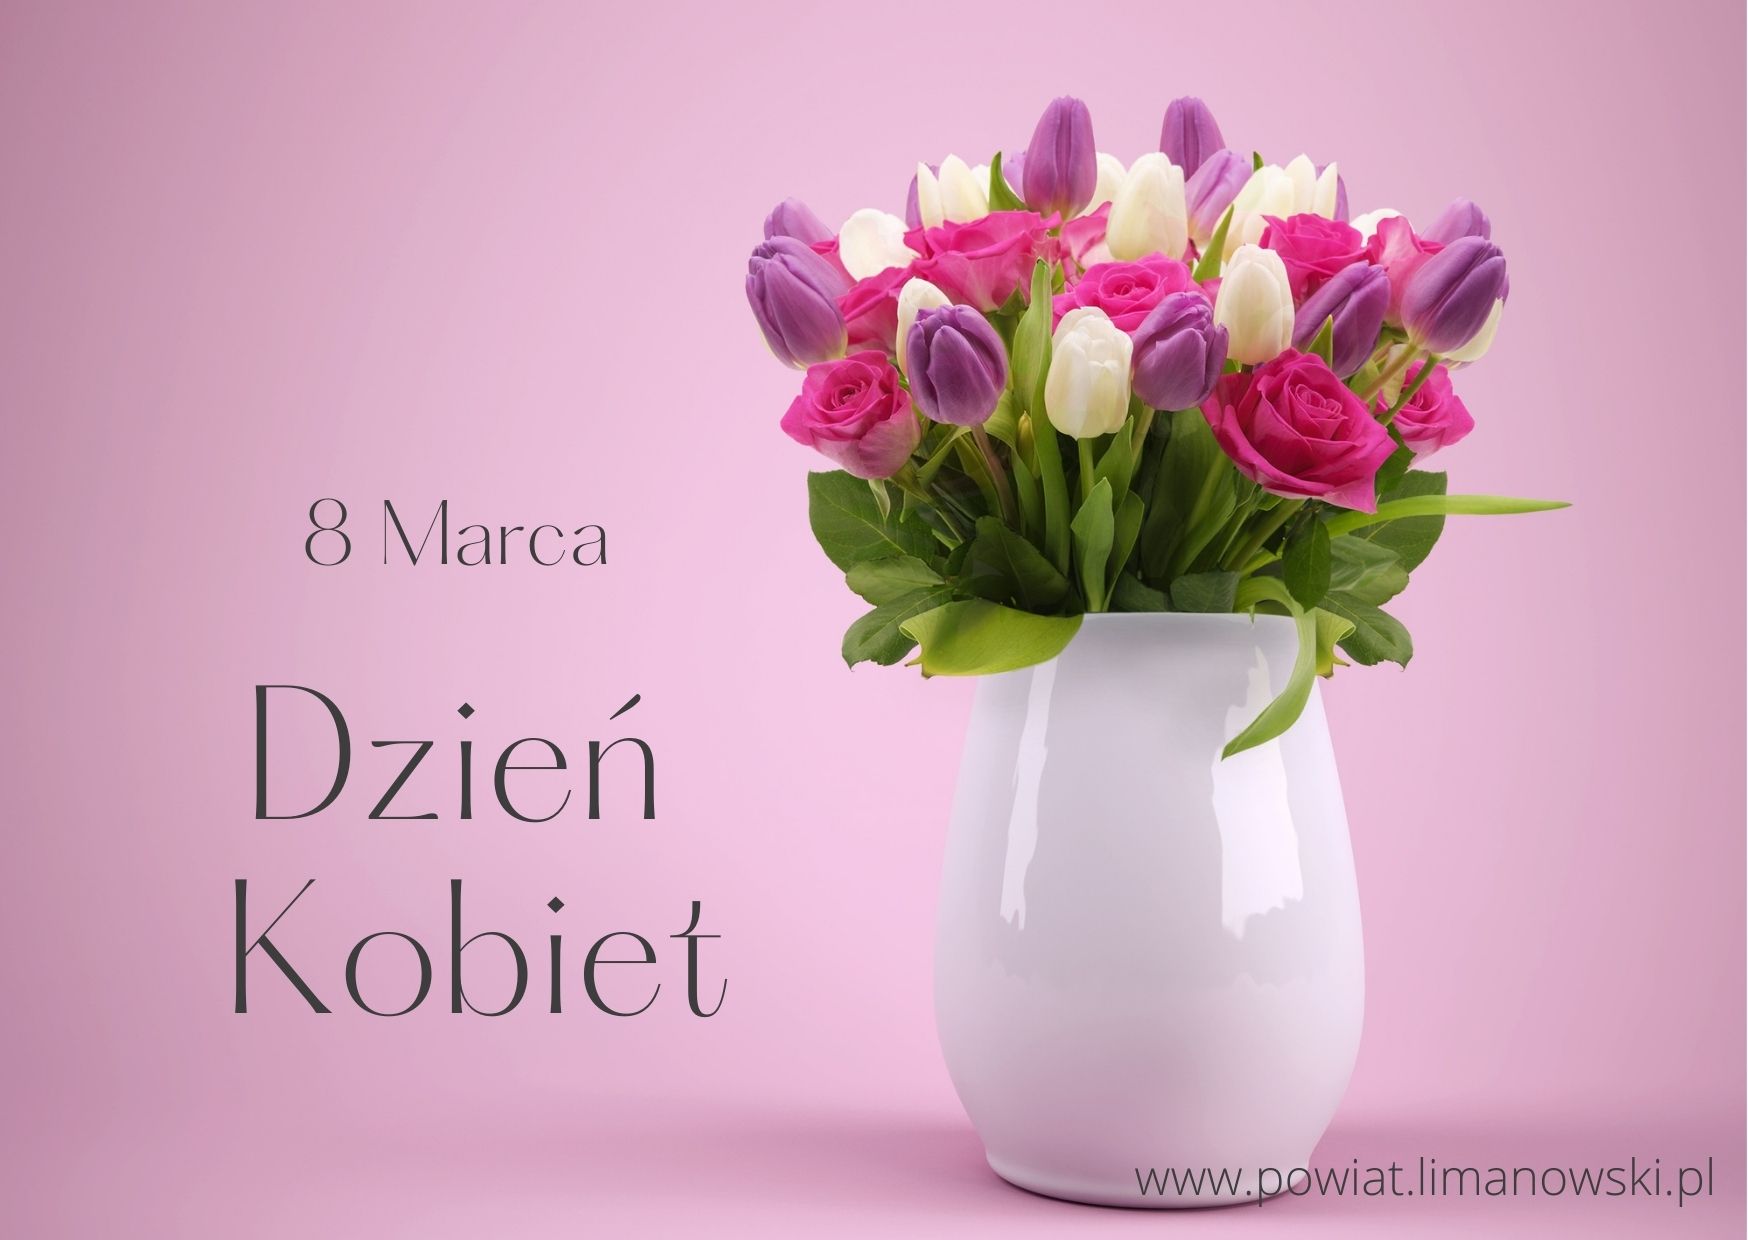 8 marca Dzień Kobiet plakat. W tle wazon z tulipanami i różami